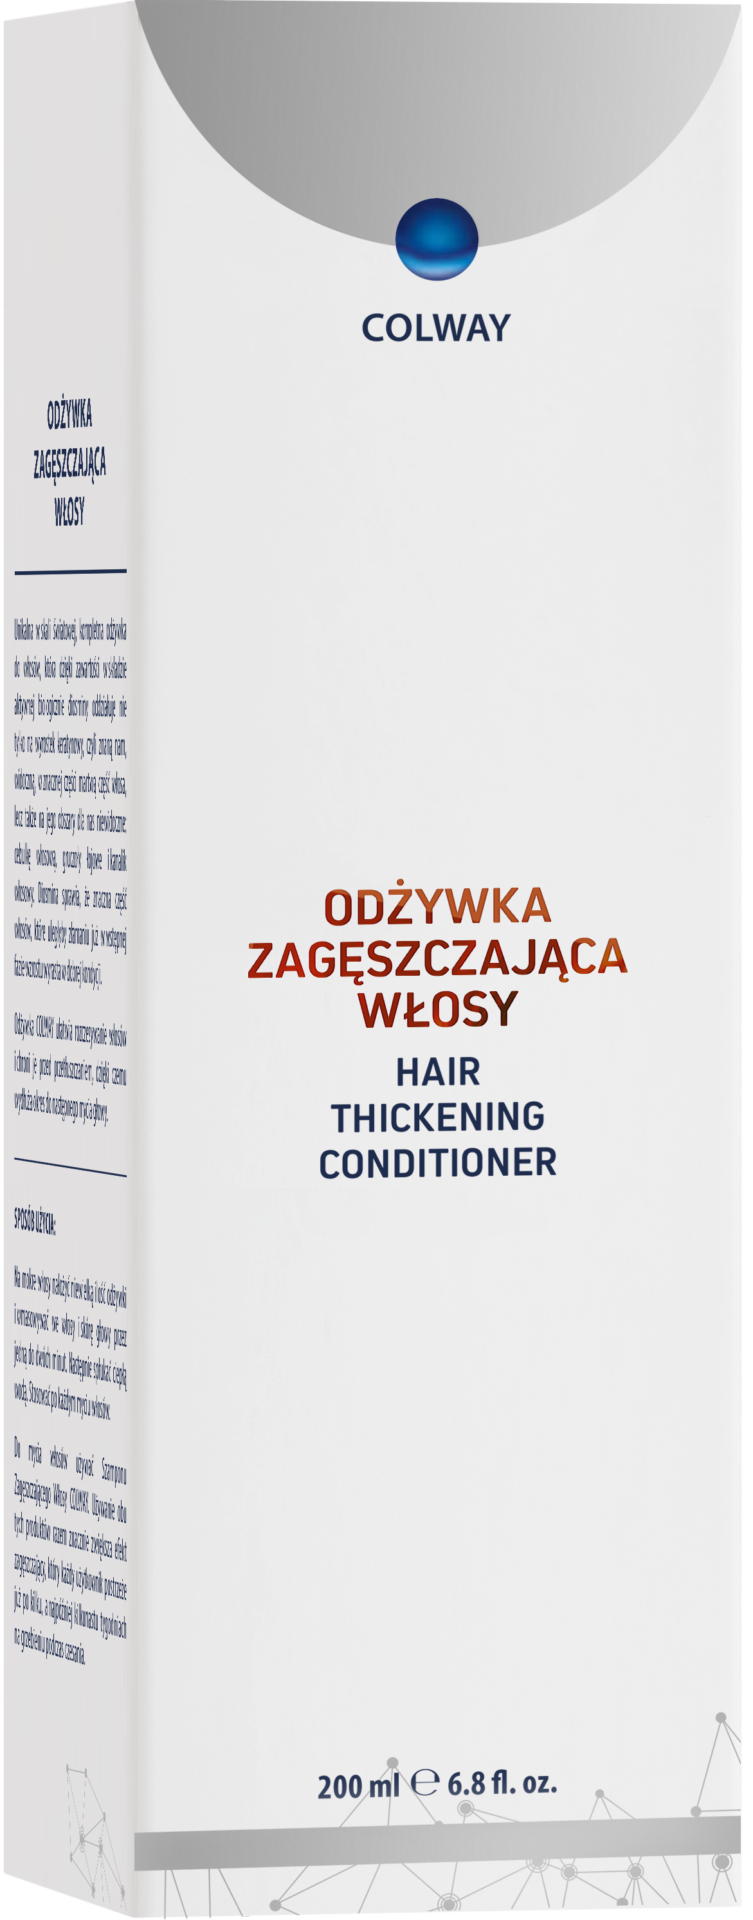 Colway odzywka-zageszczajaca Hair Thickening Conditioner